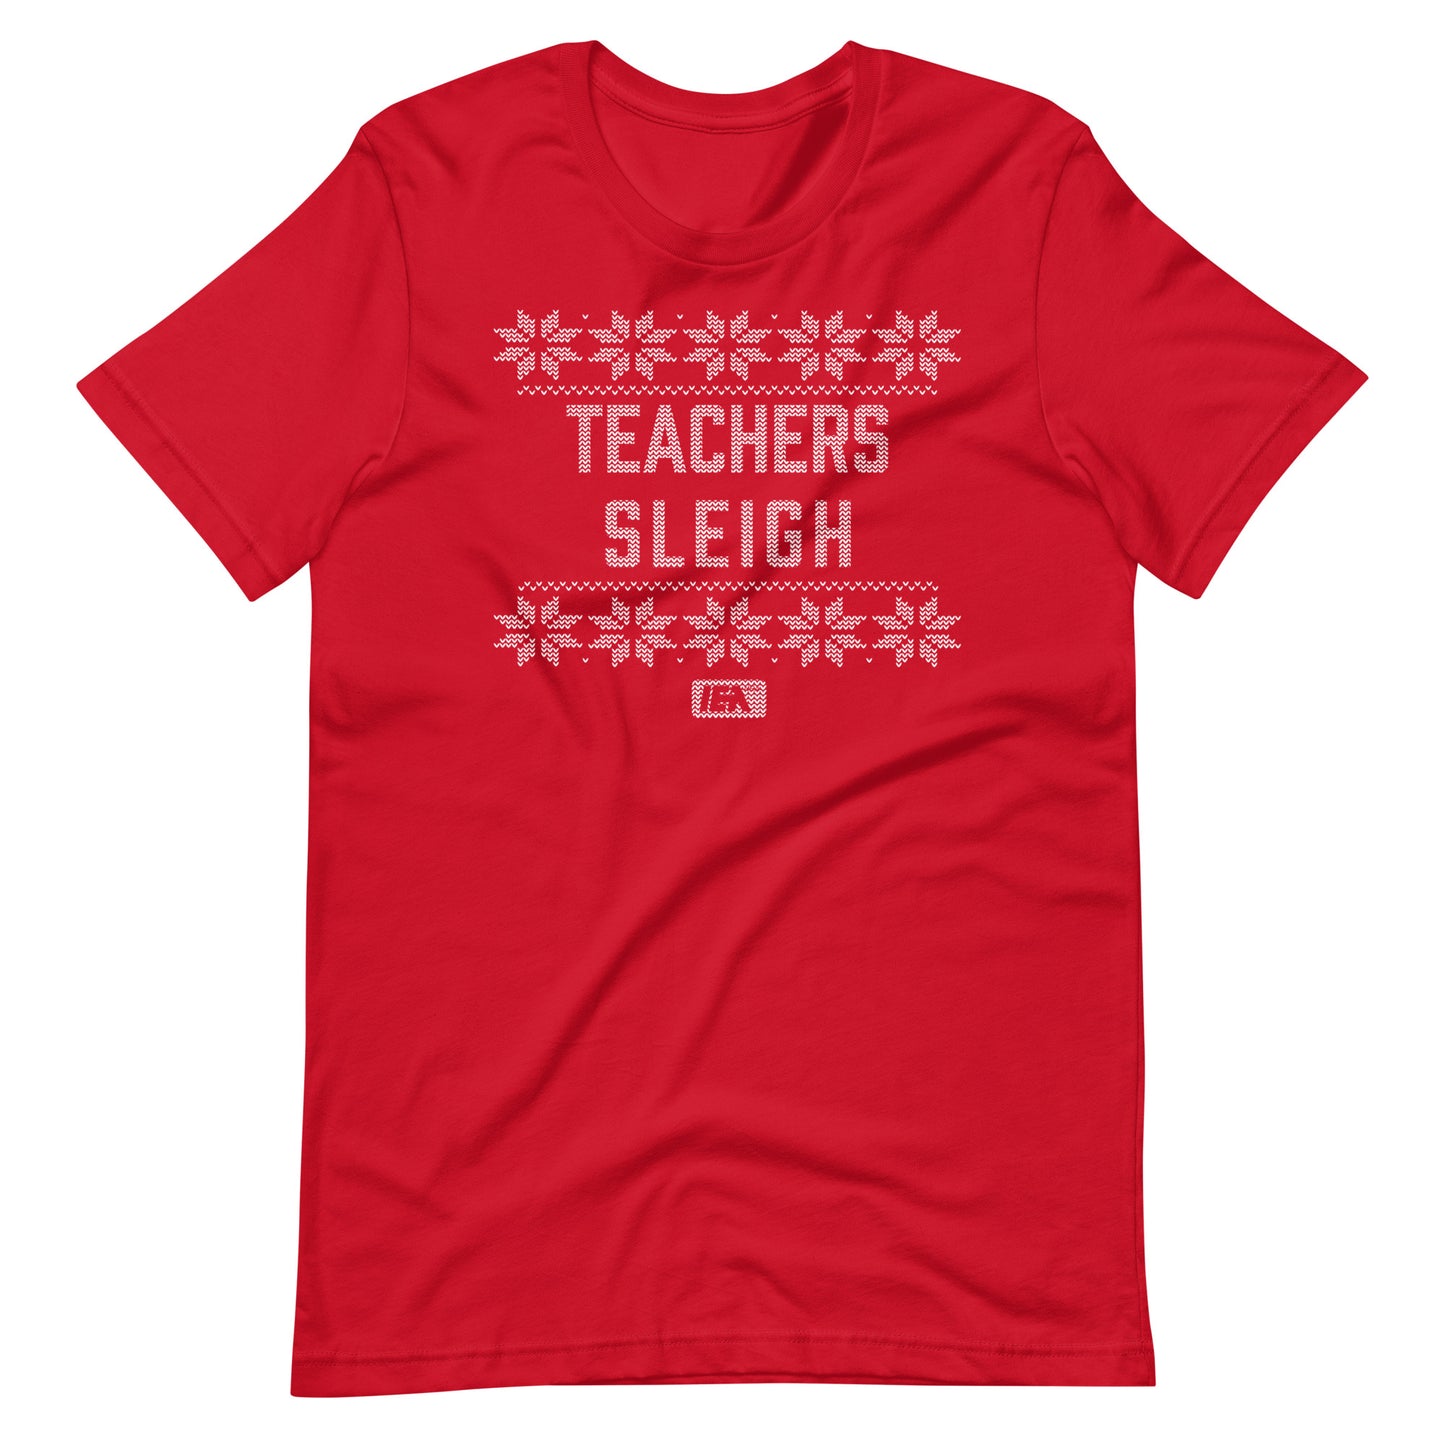 Teachers Sleigh t-shirt